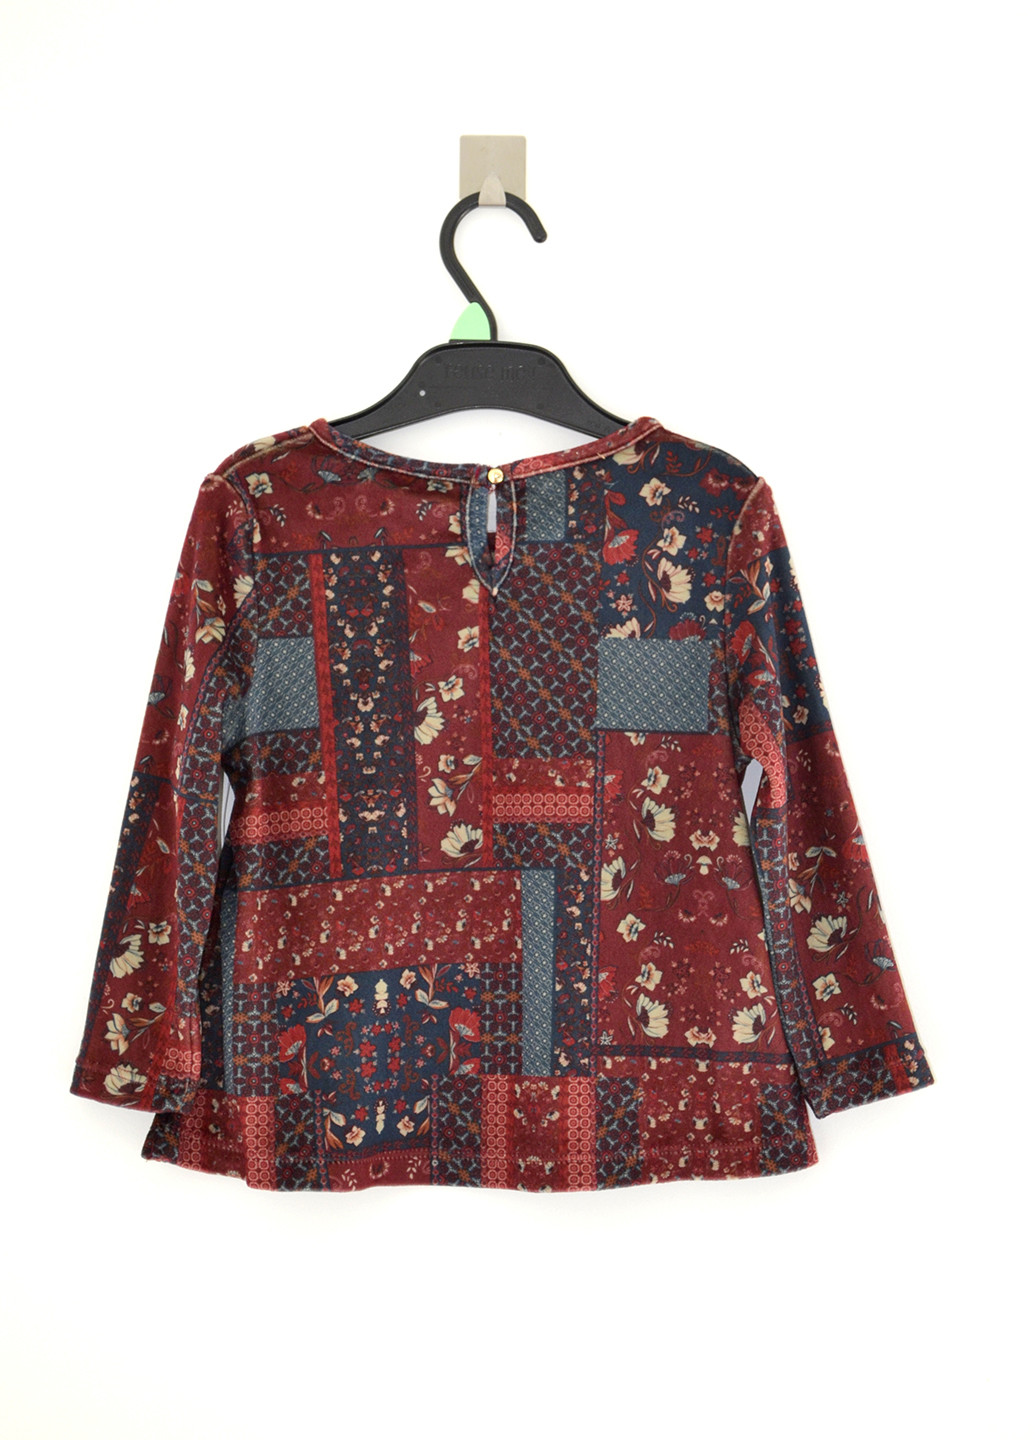 Комбинированная с геометрическим узором блузка с длинным рукавом Matalan демисезонная